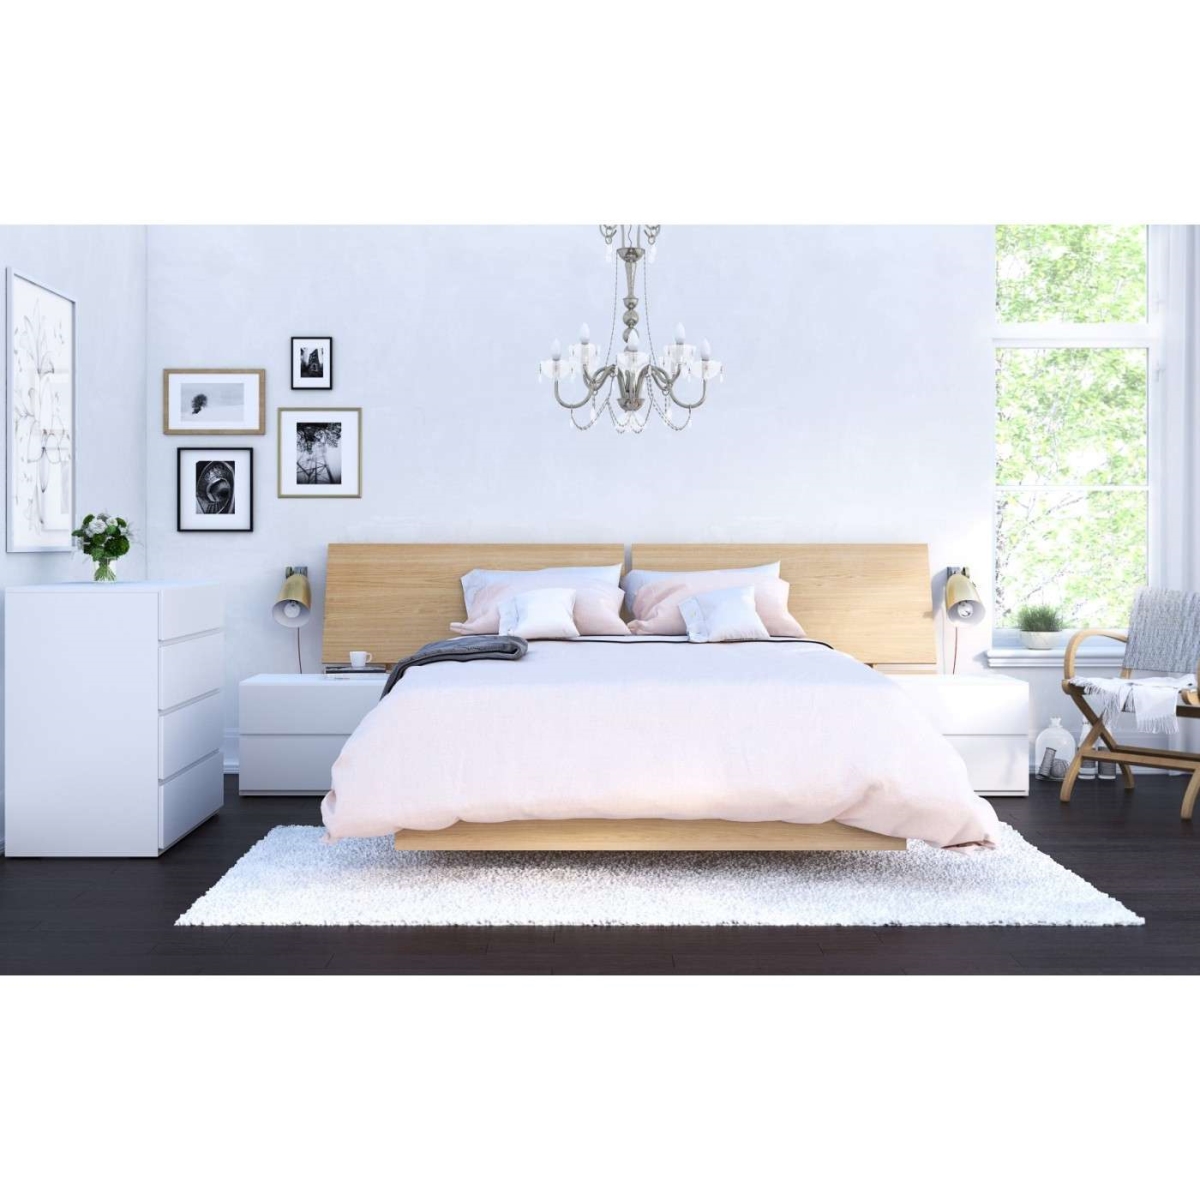 400839 Fiji Bedroom Set, Natural Maple & White - Full Size